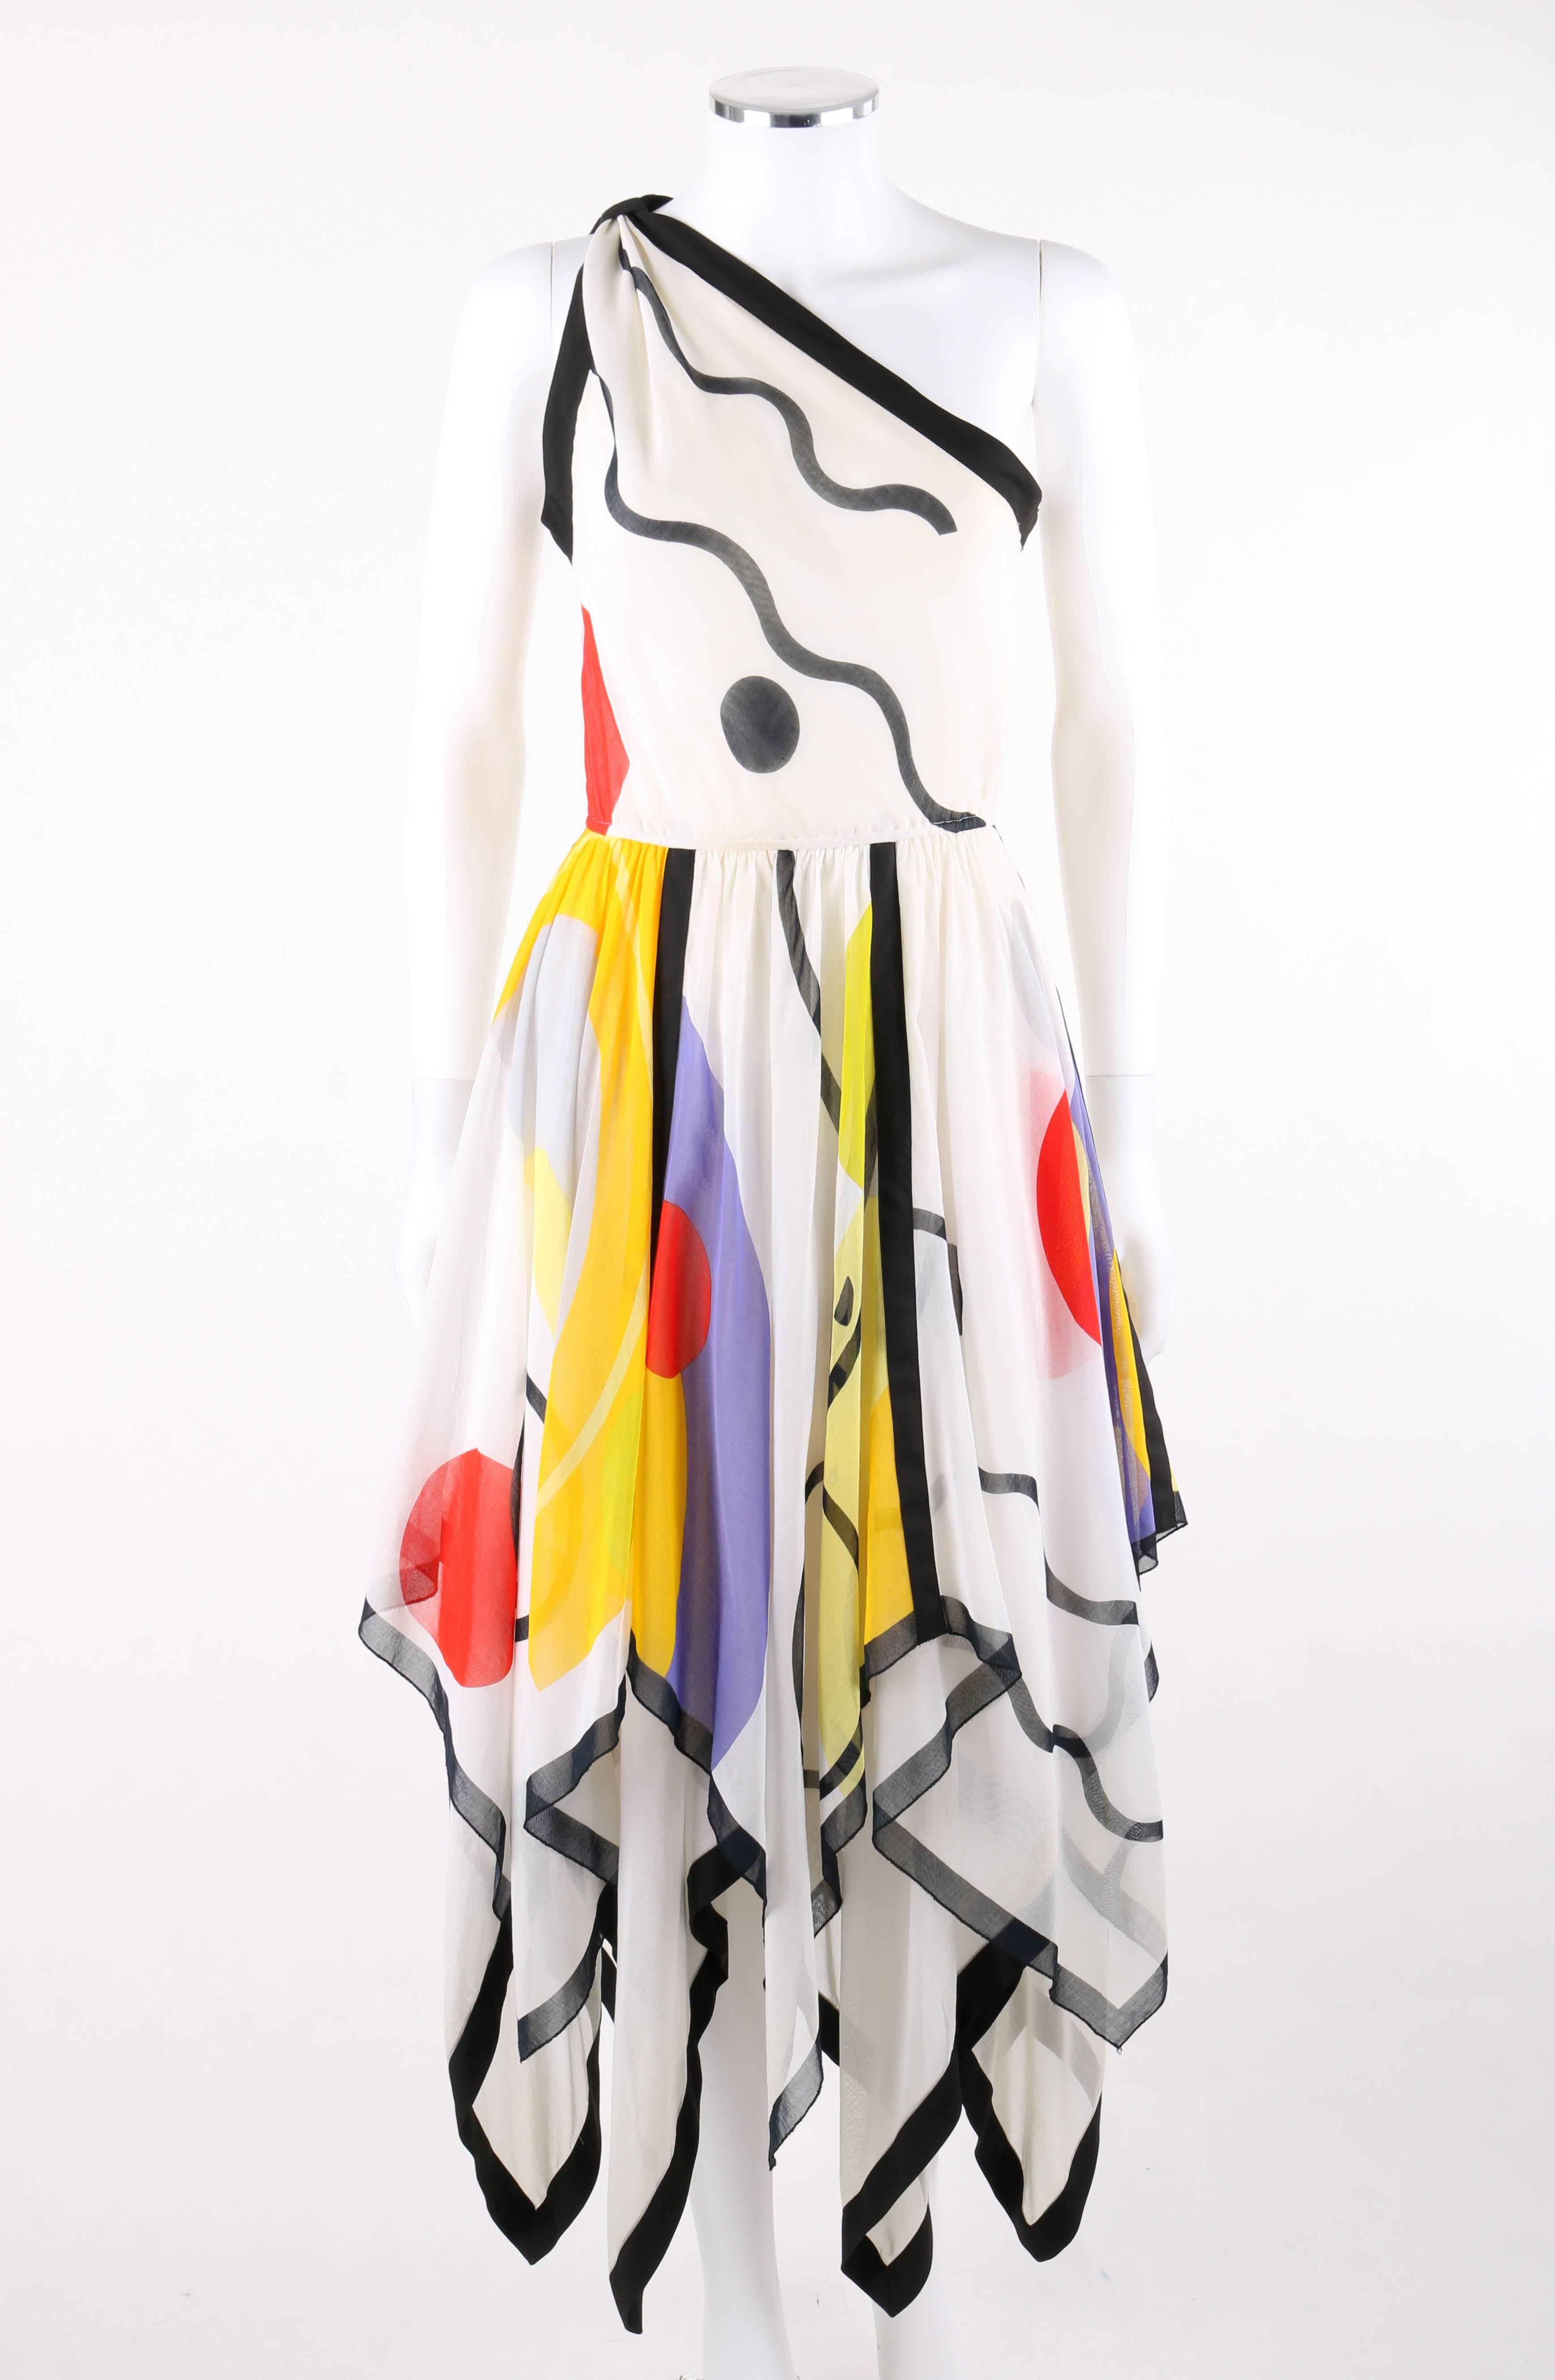 Louis Feraud um 1990: Geometrischer Druck auf einer Schulter, Kleid mit Taschentuch-Saum. Halbtransparenter weißer Baumwollvoile mit mehrfarbigem, geometrischem Druck in Rot, Gelb, Grün, Lila, Schwarz und Grau. Eine Schulter. Schwarze Stoffschlaufe